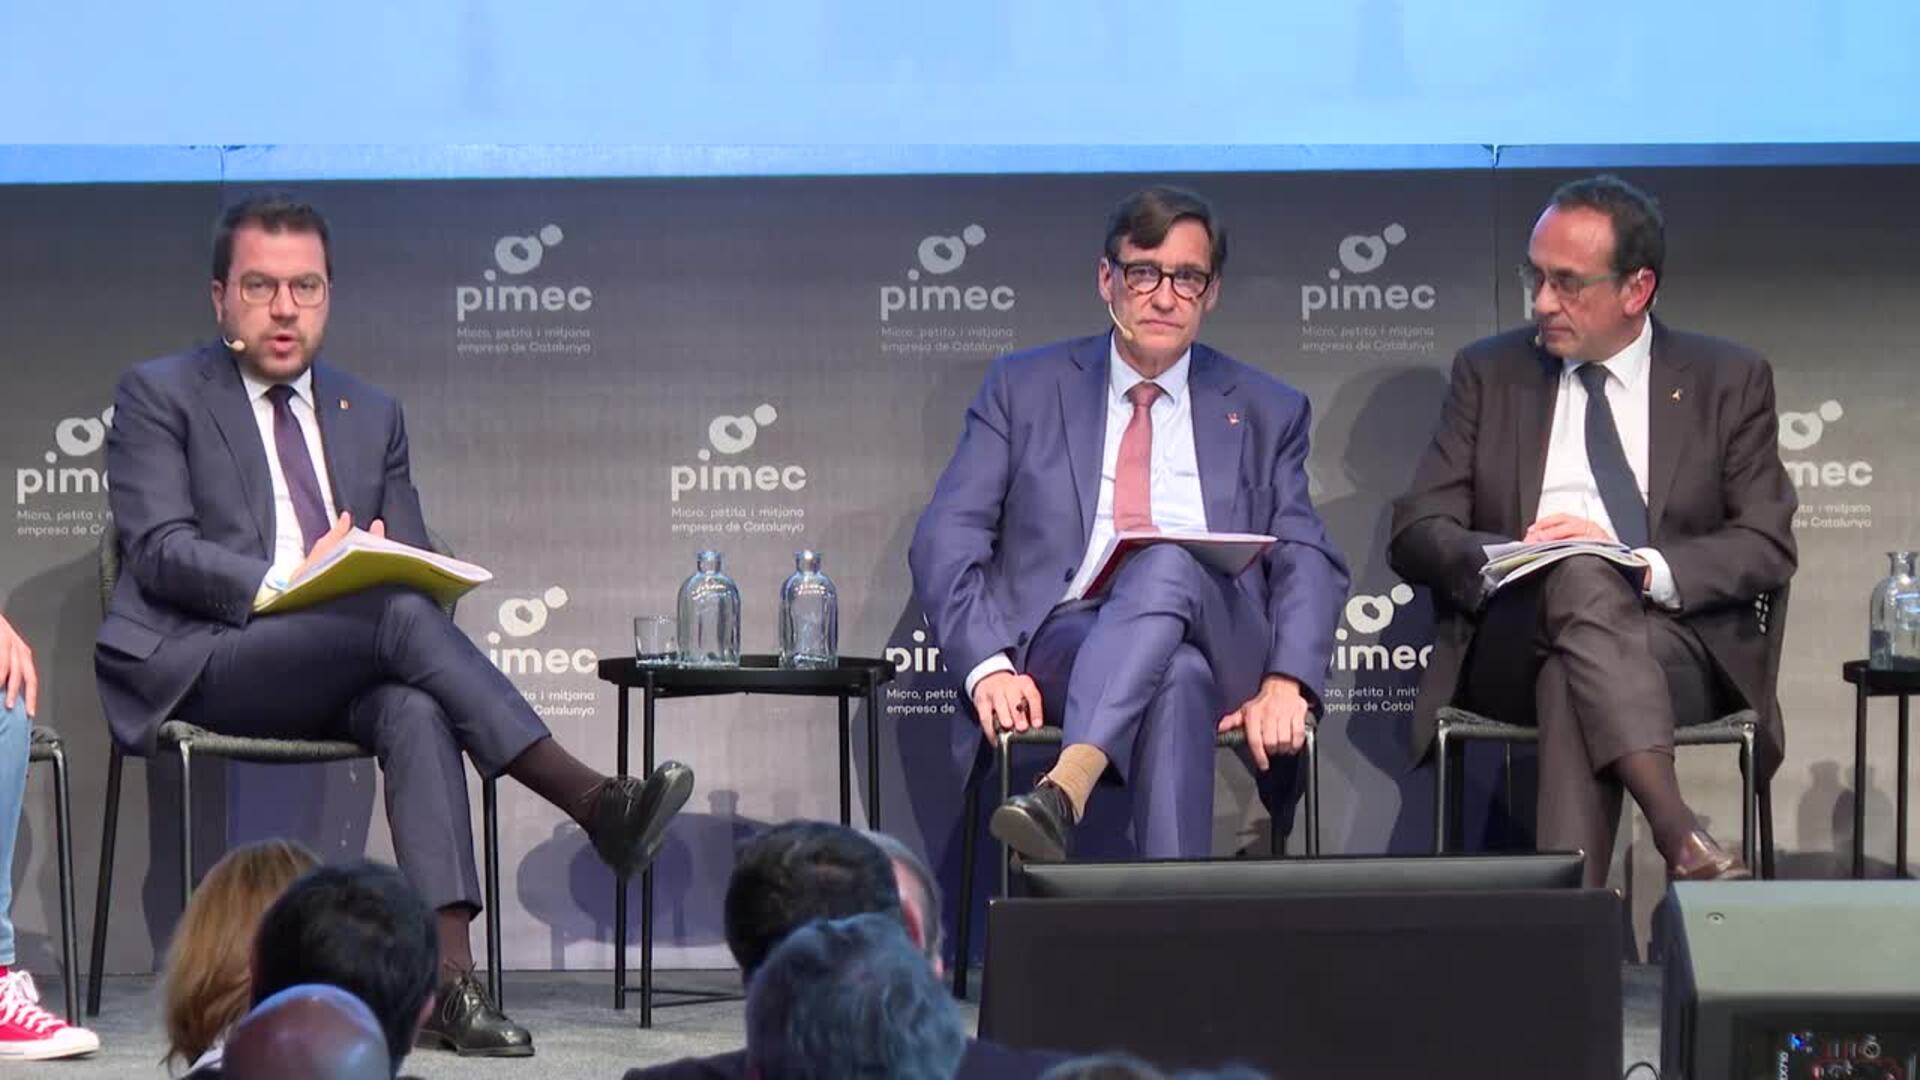 Aragonès y Rull se cruzan reproches por la ausencia de Puigdemont en el debate de Pimec